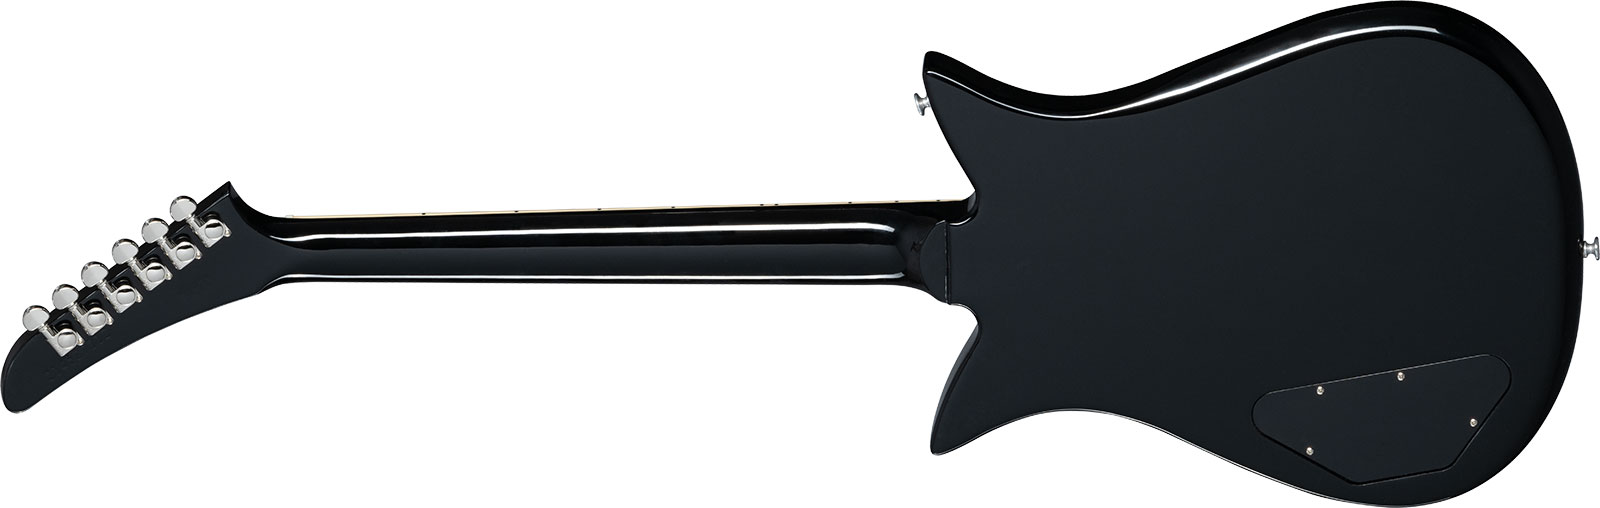 Gibson Theodore Standard Original 2h Ht Rw - Ebony - Guitare Électrique RÉtro Rock - Variation 1